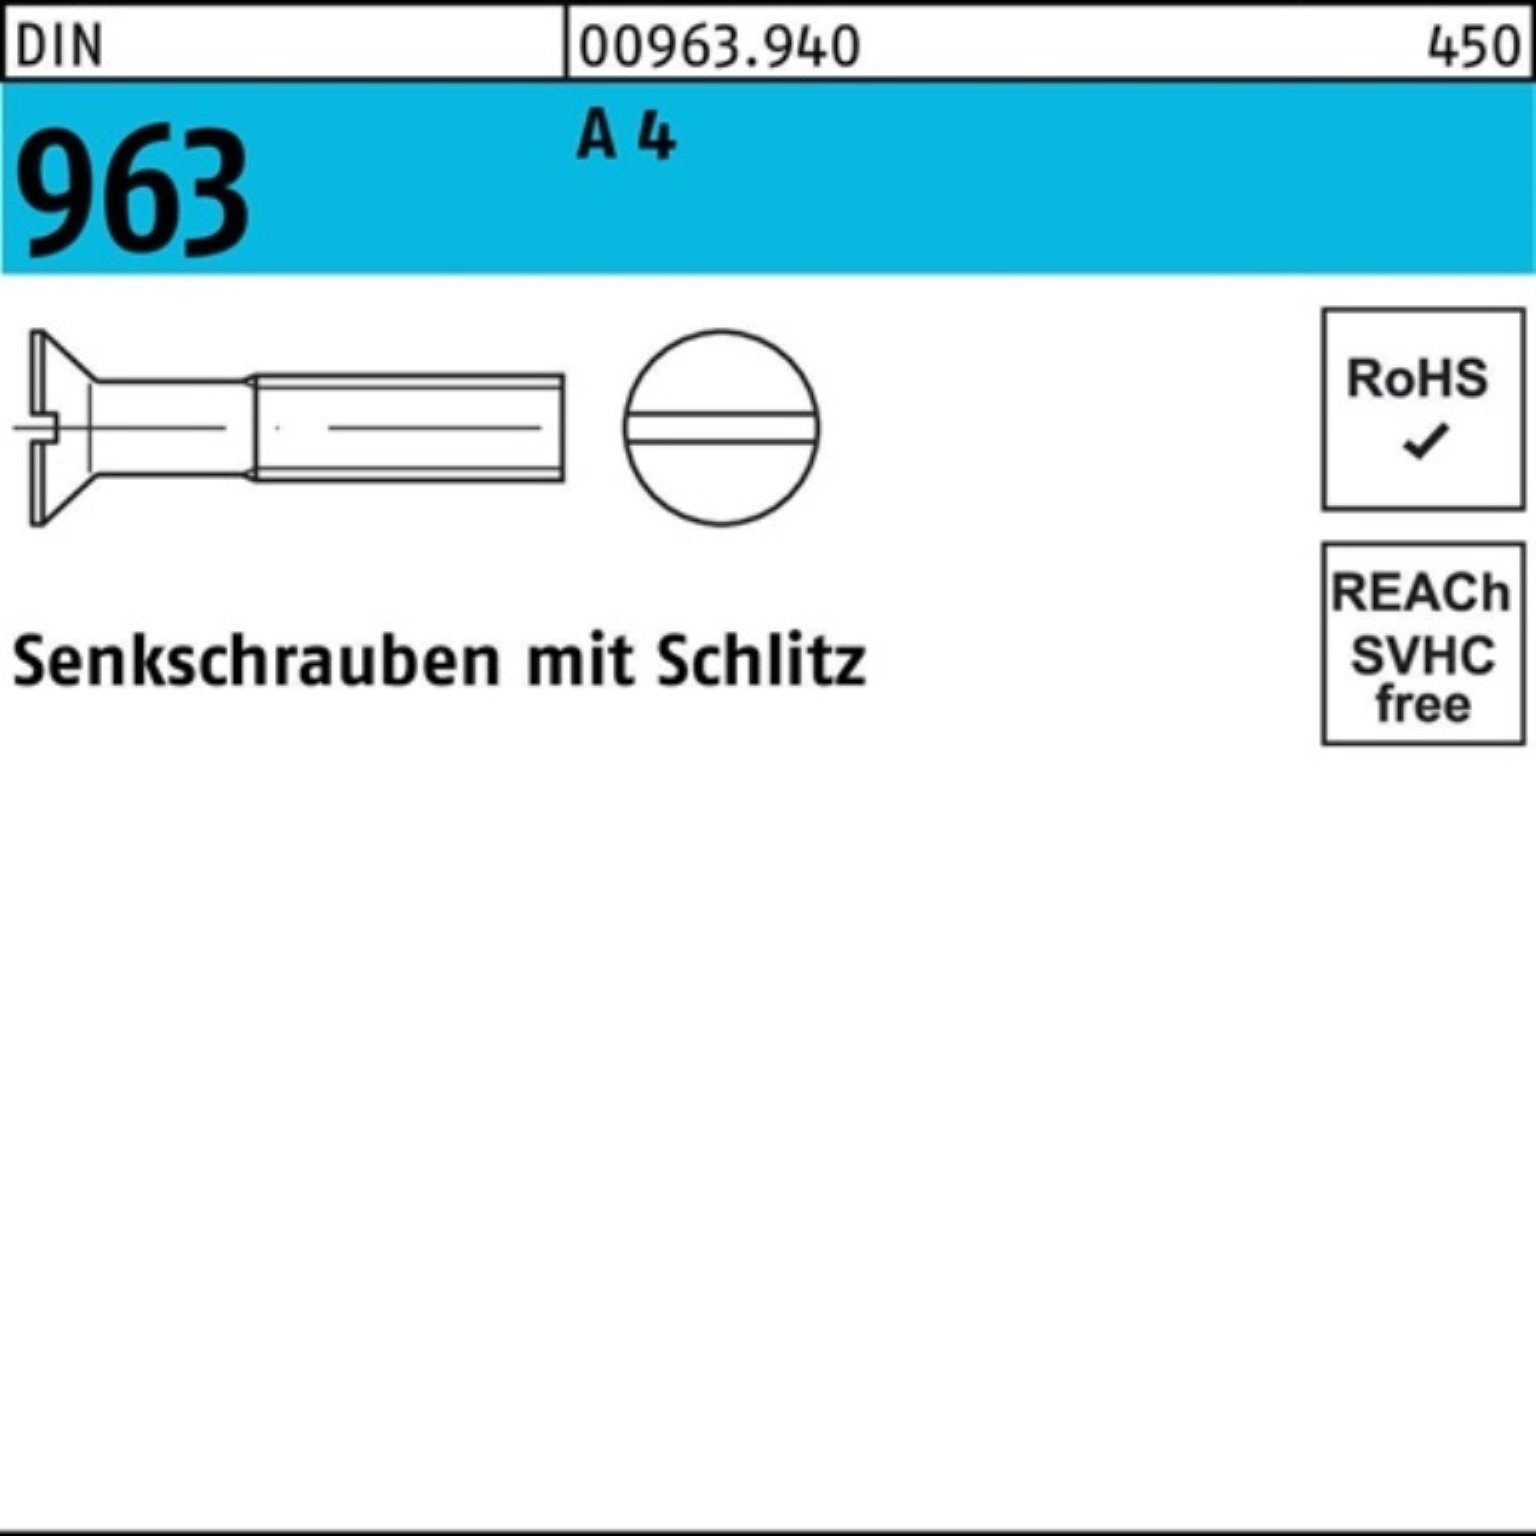 35 4 963 A Stück Senkschraube Pack 100 Schlitz Reyher DIN 100er M5x Senkschraube 963 DIN